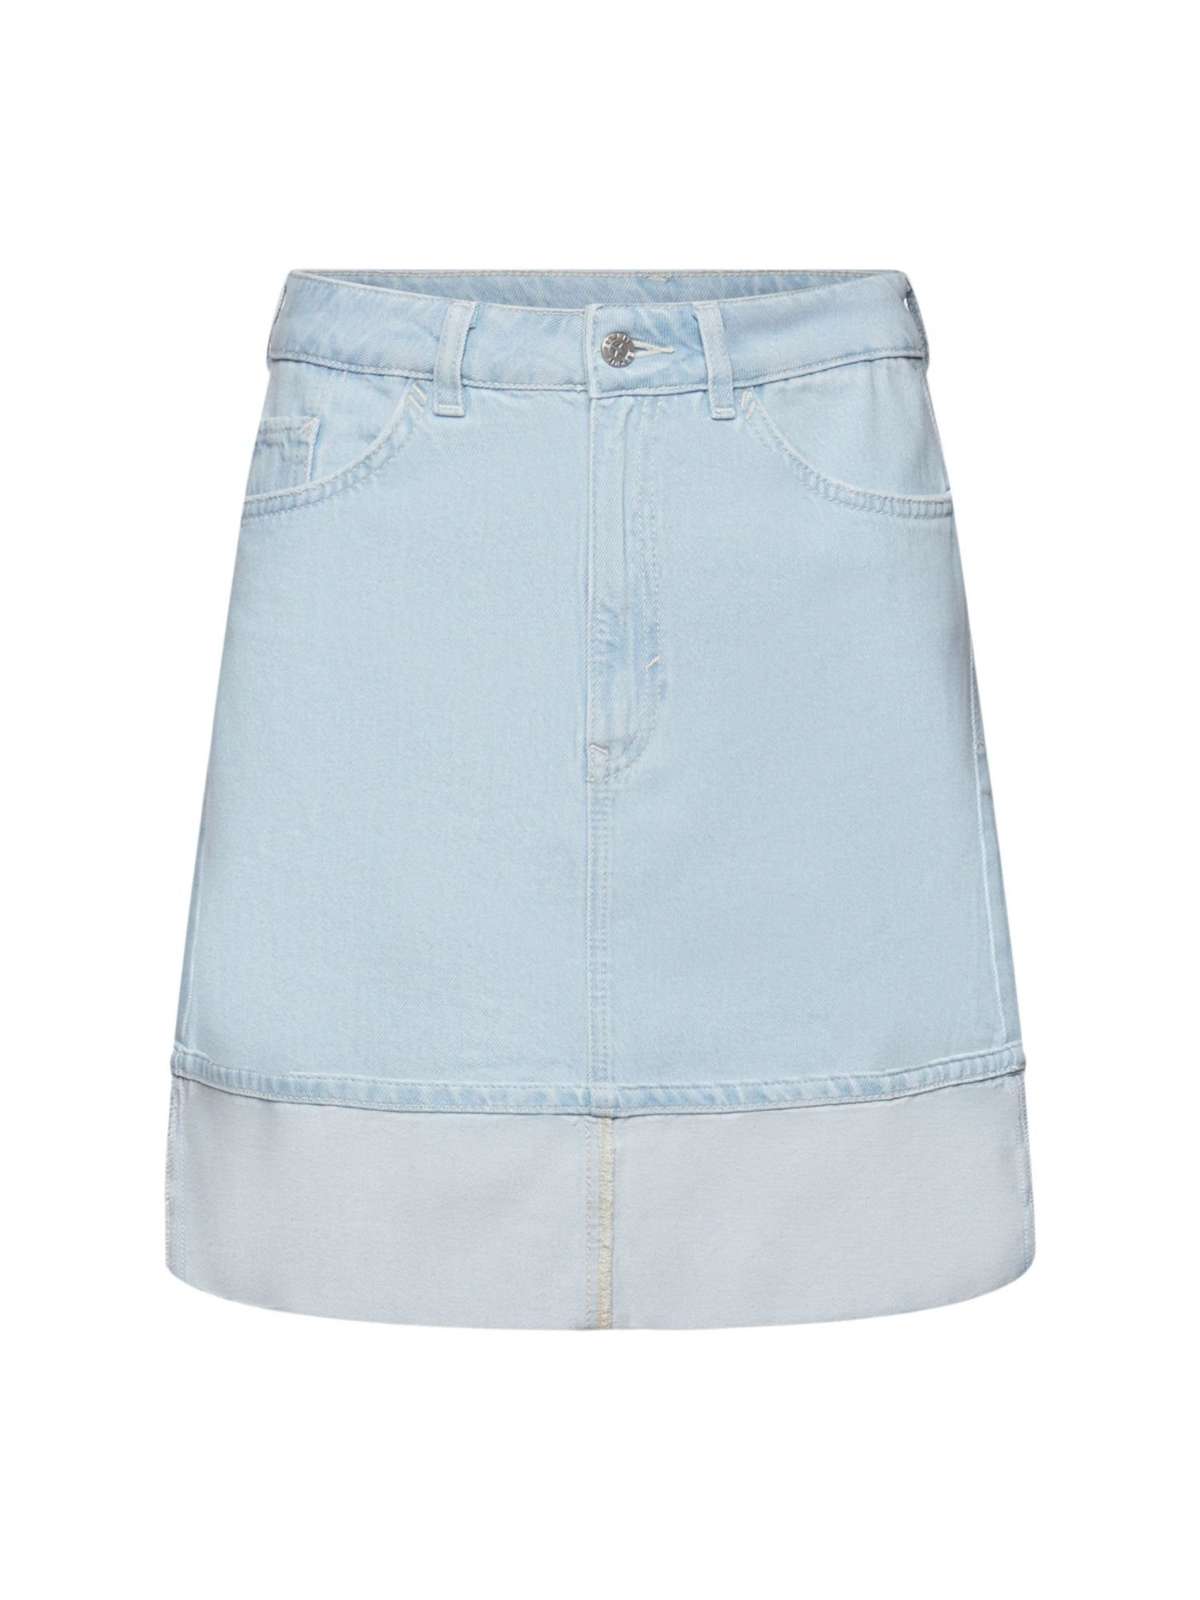 Джинсовая юбка джинсовое мини со средней высотой талии